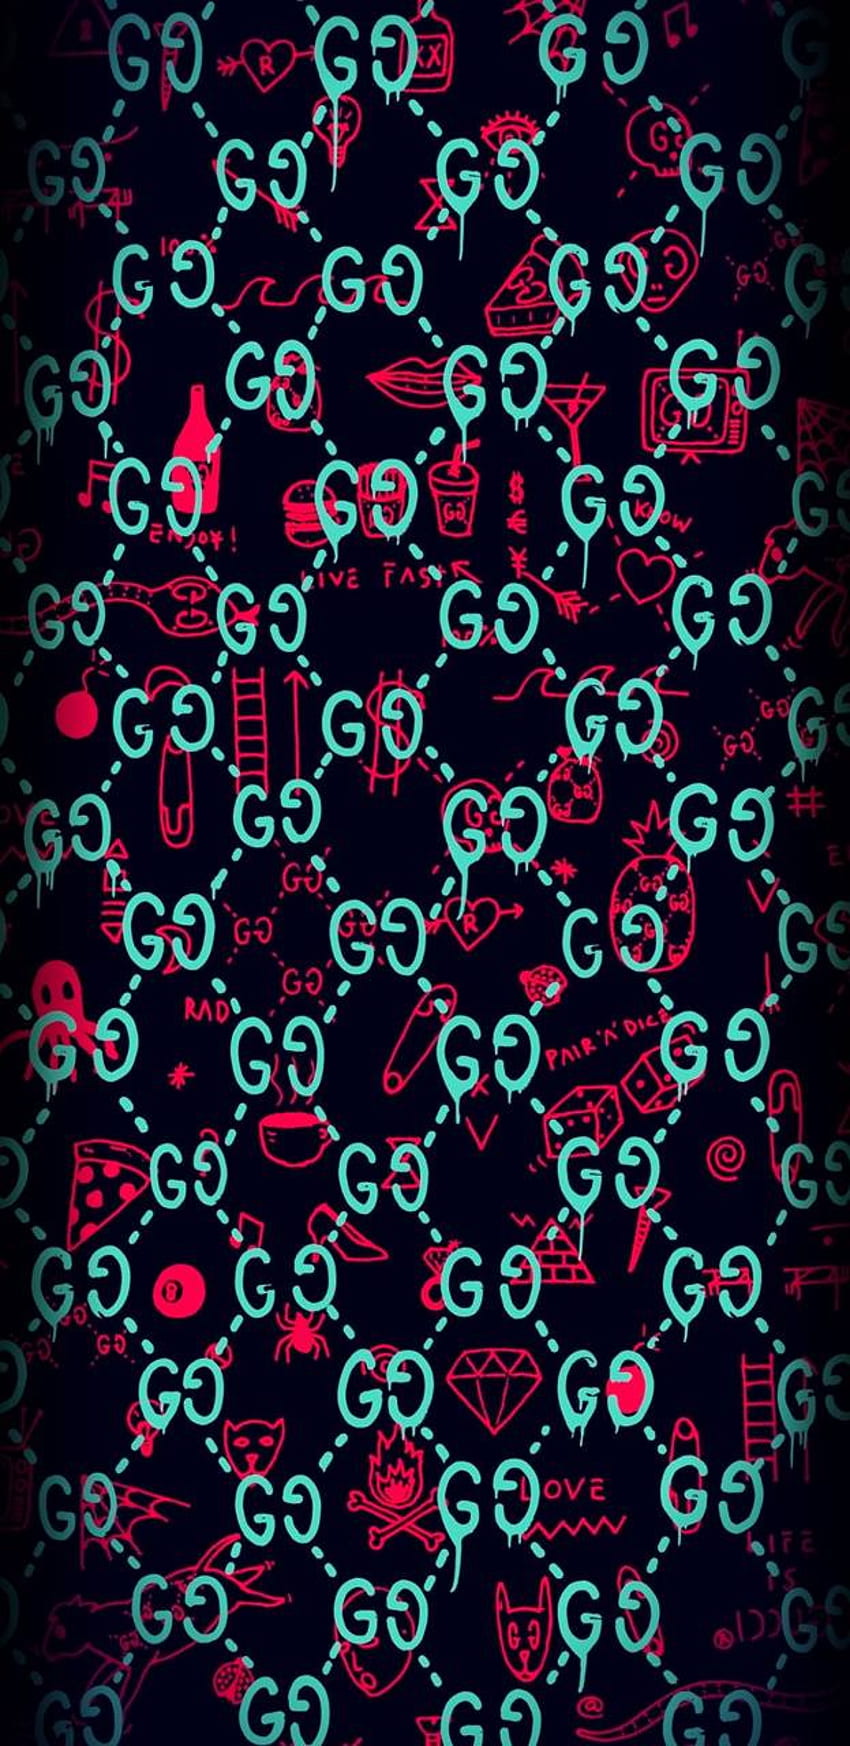 Gucci And Supreme, Cool Supreme Gucci HD phone wallpaper